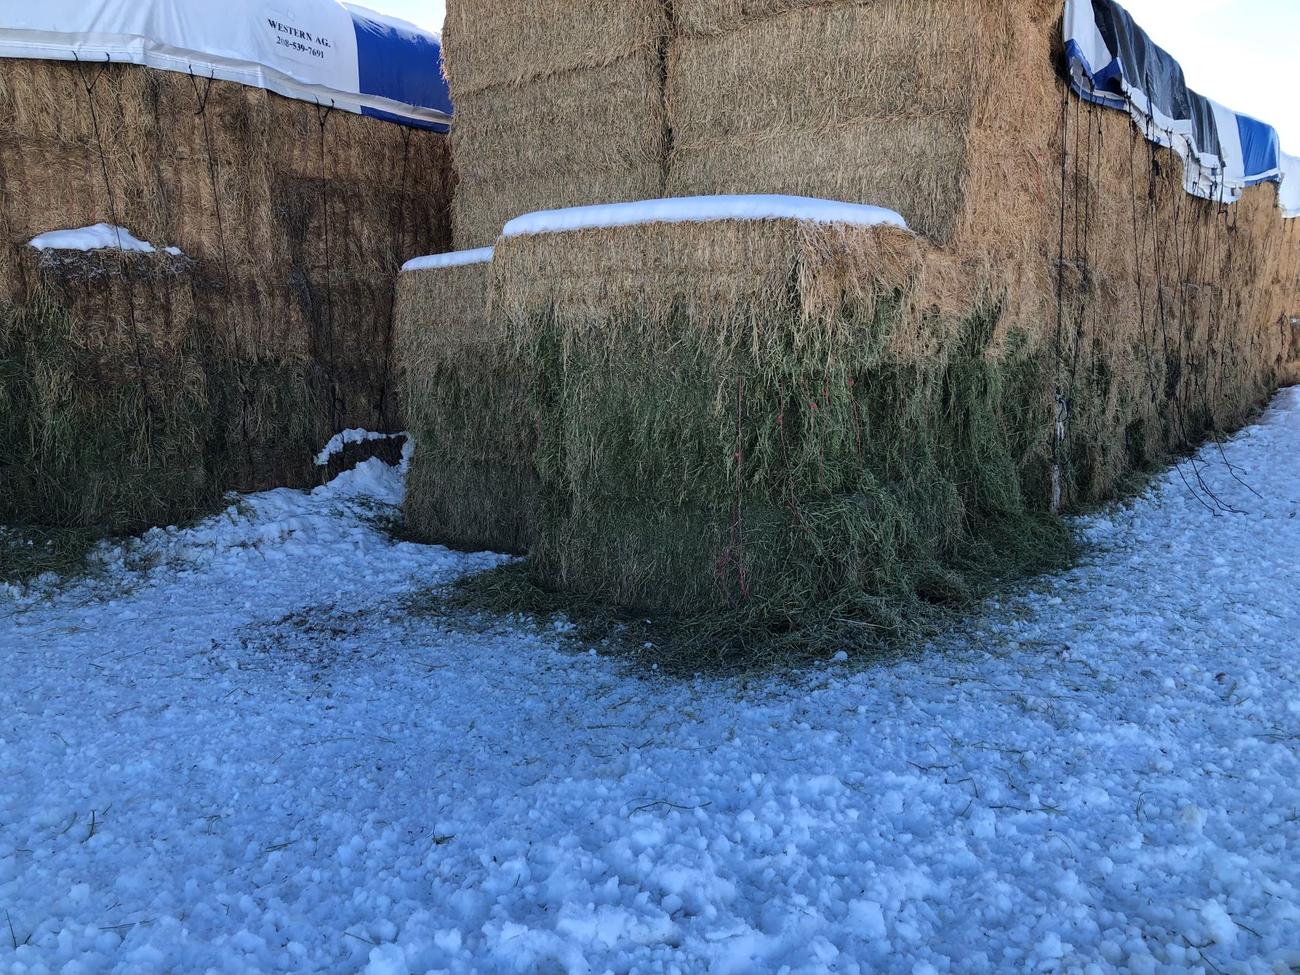 Elk damaged haystack